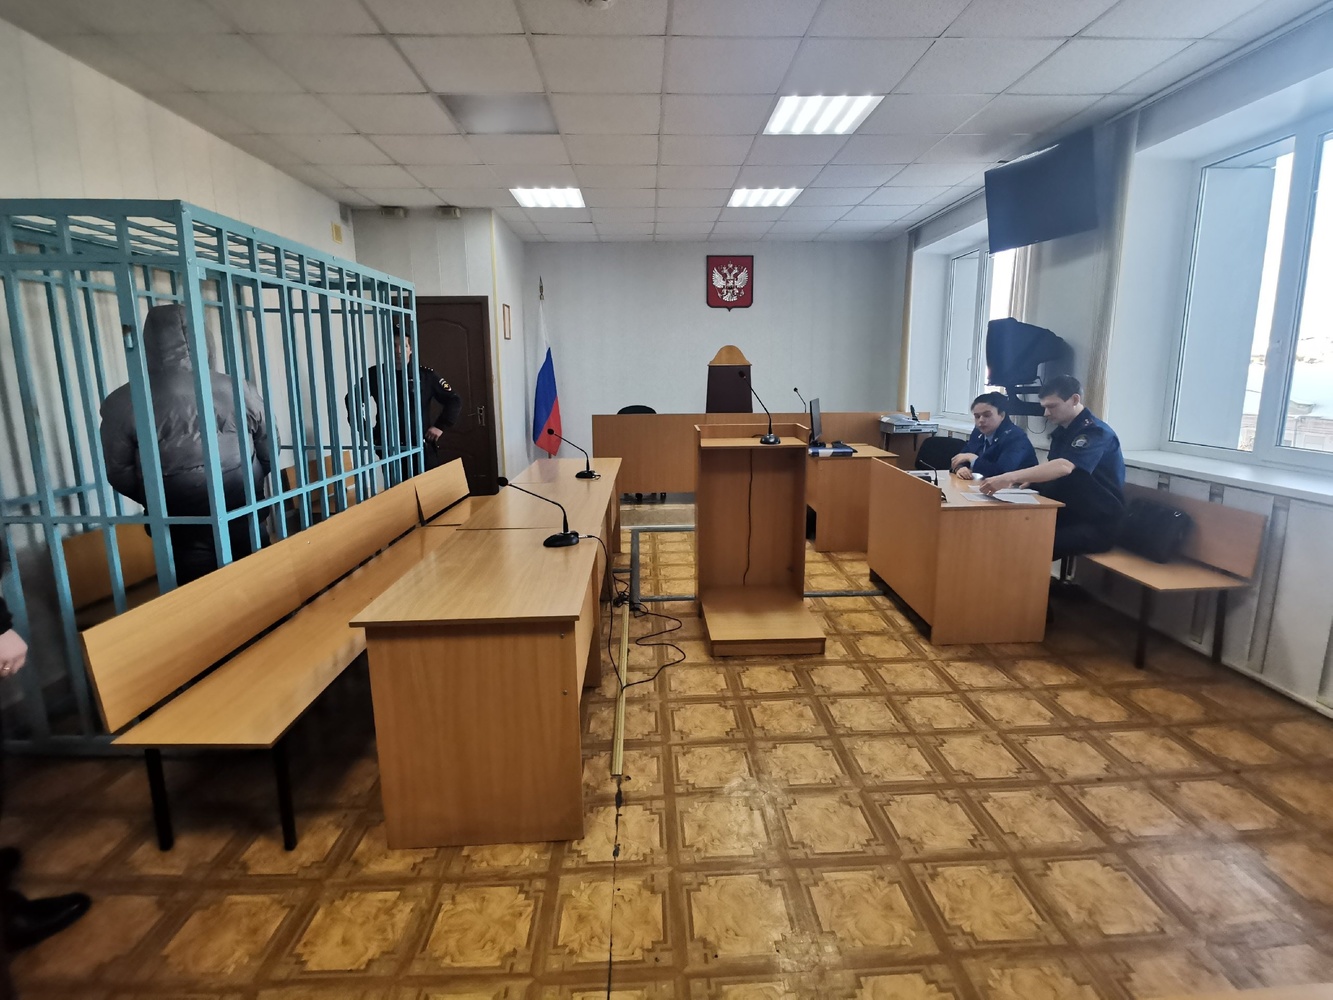 Опубликованы фото из зала суда во время избрания меры пресечения похитившим девочку в Калужской области 